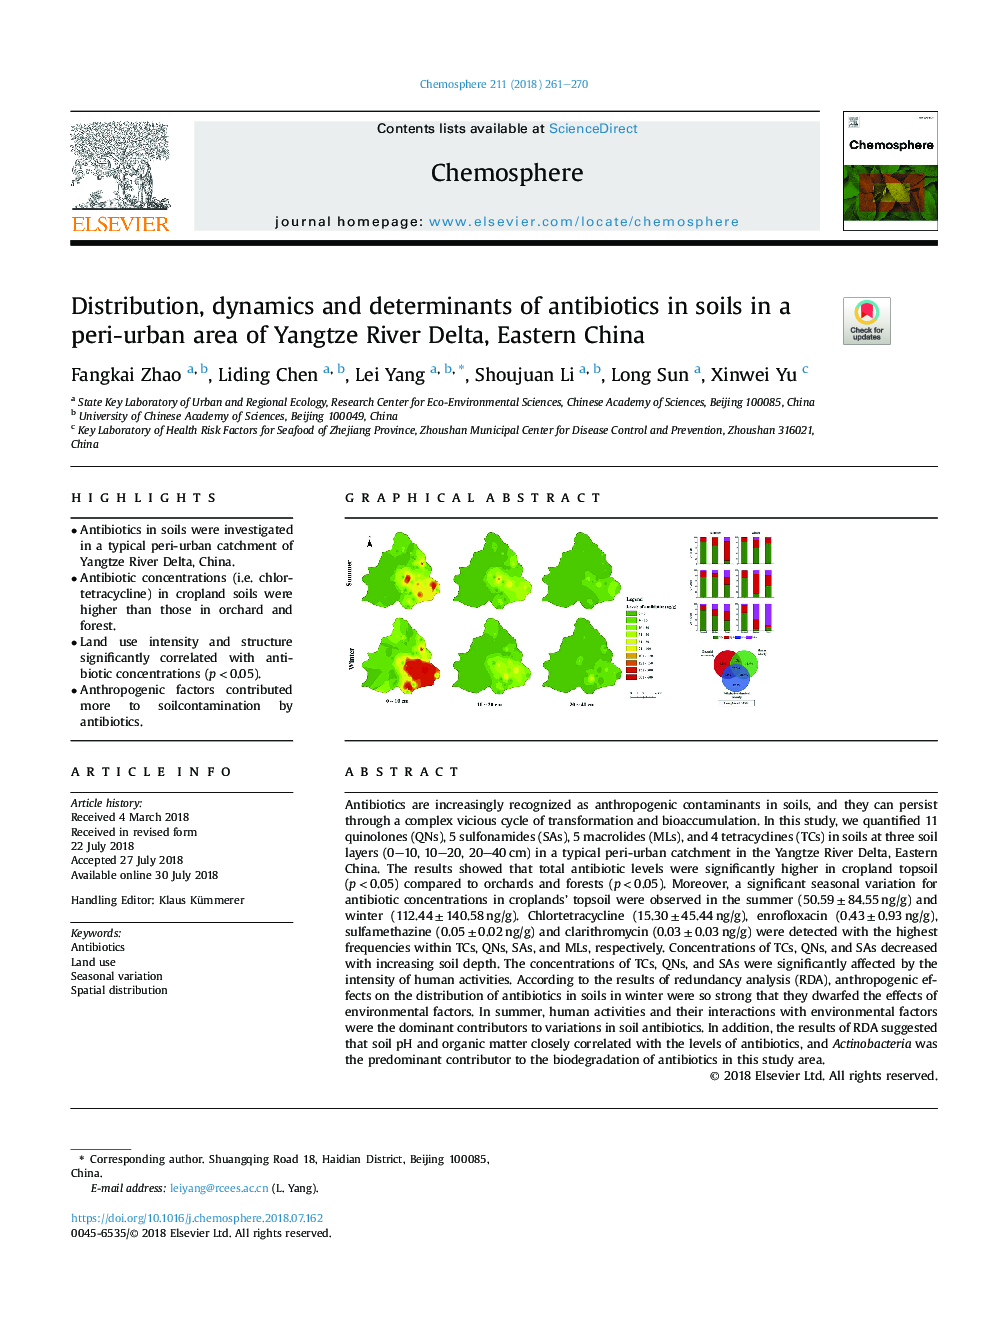 توزیع، پویایی و تعیین کننده های آنتی بیوتیک ها در خاک های منطقه ای در منطقه ی دلتای یانگ تسه، چین شرقی 